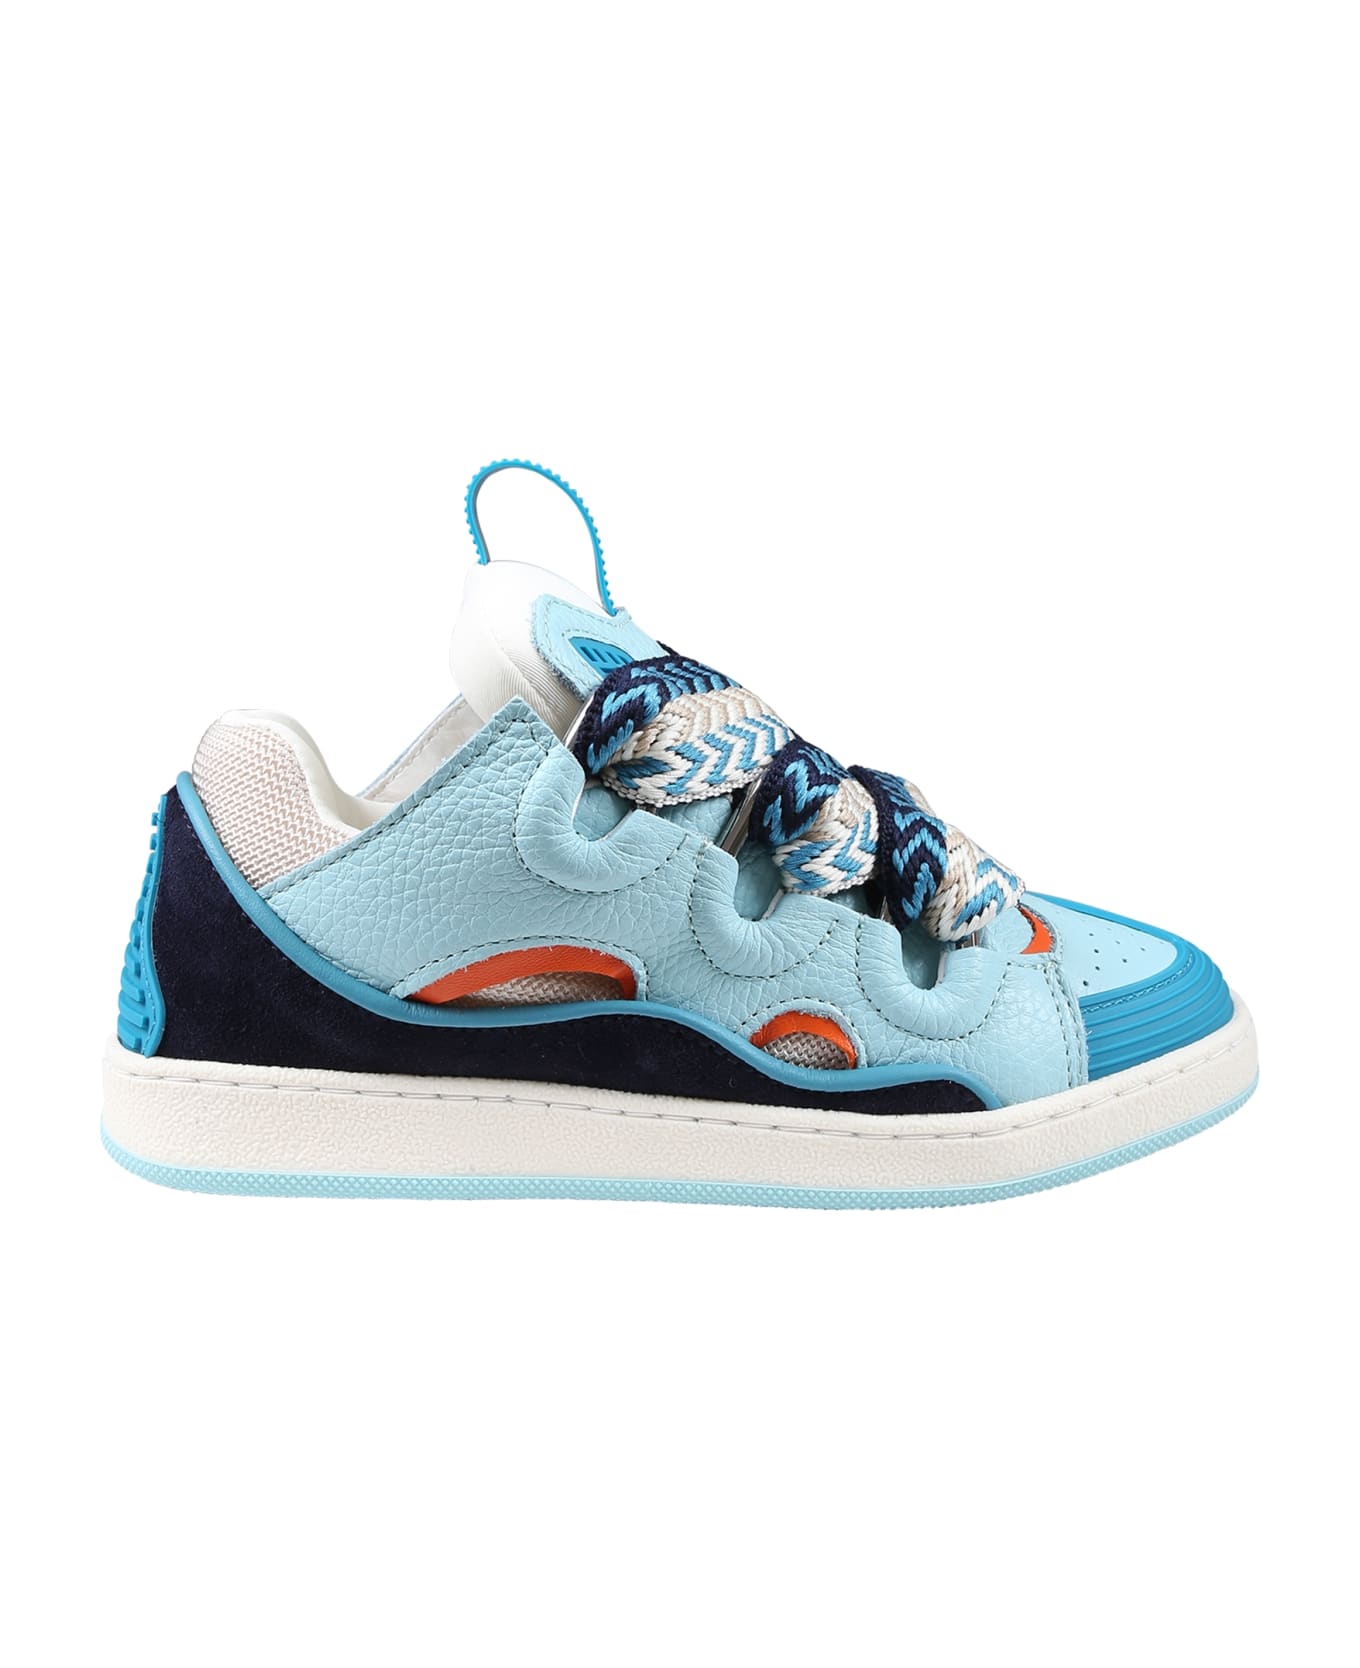 Lanvin Light Blue Sneakers For Boy - Blu